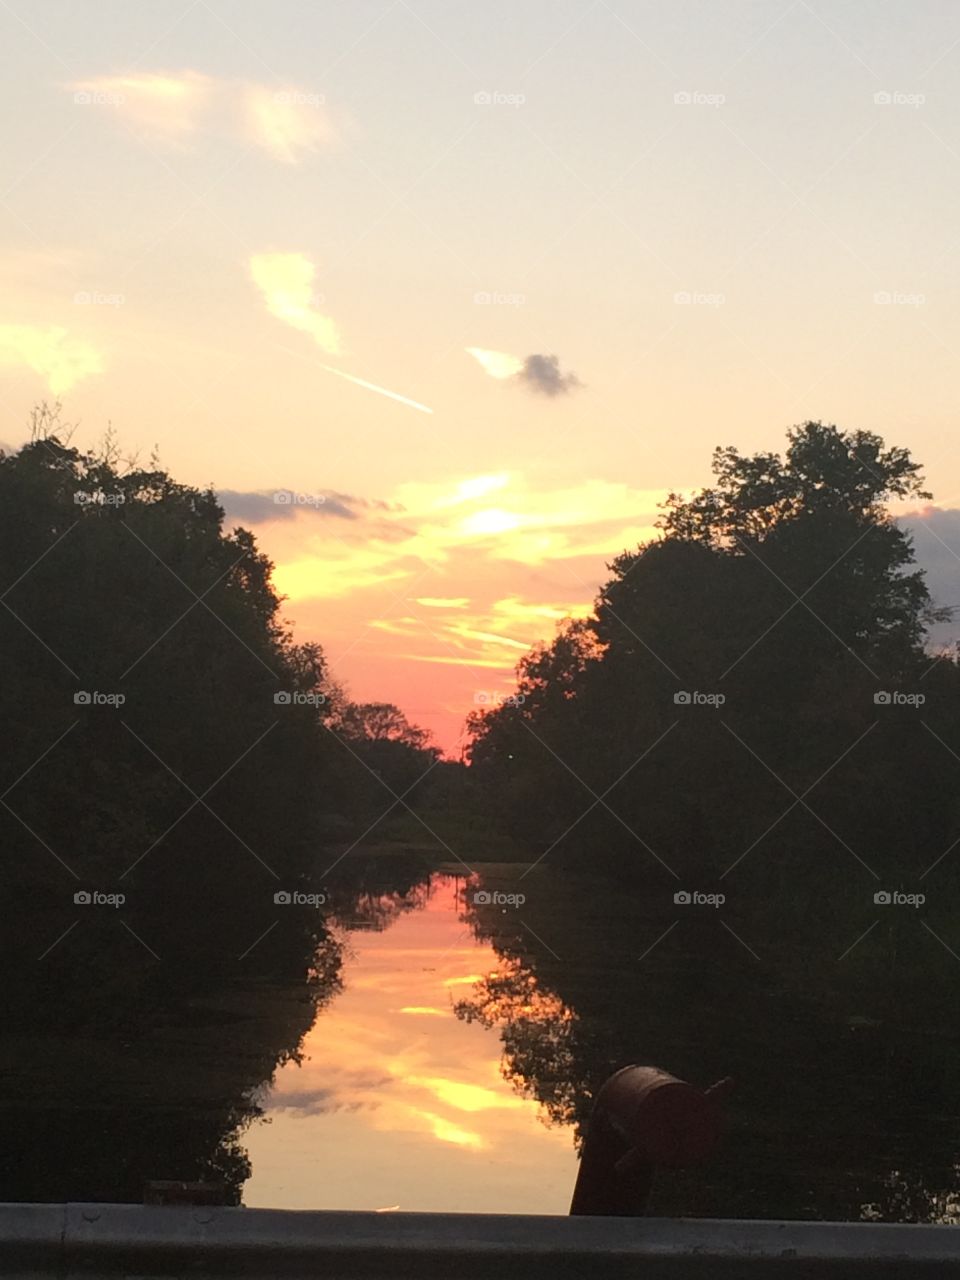 Sunset on the bayou